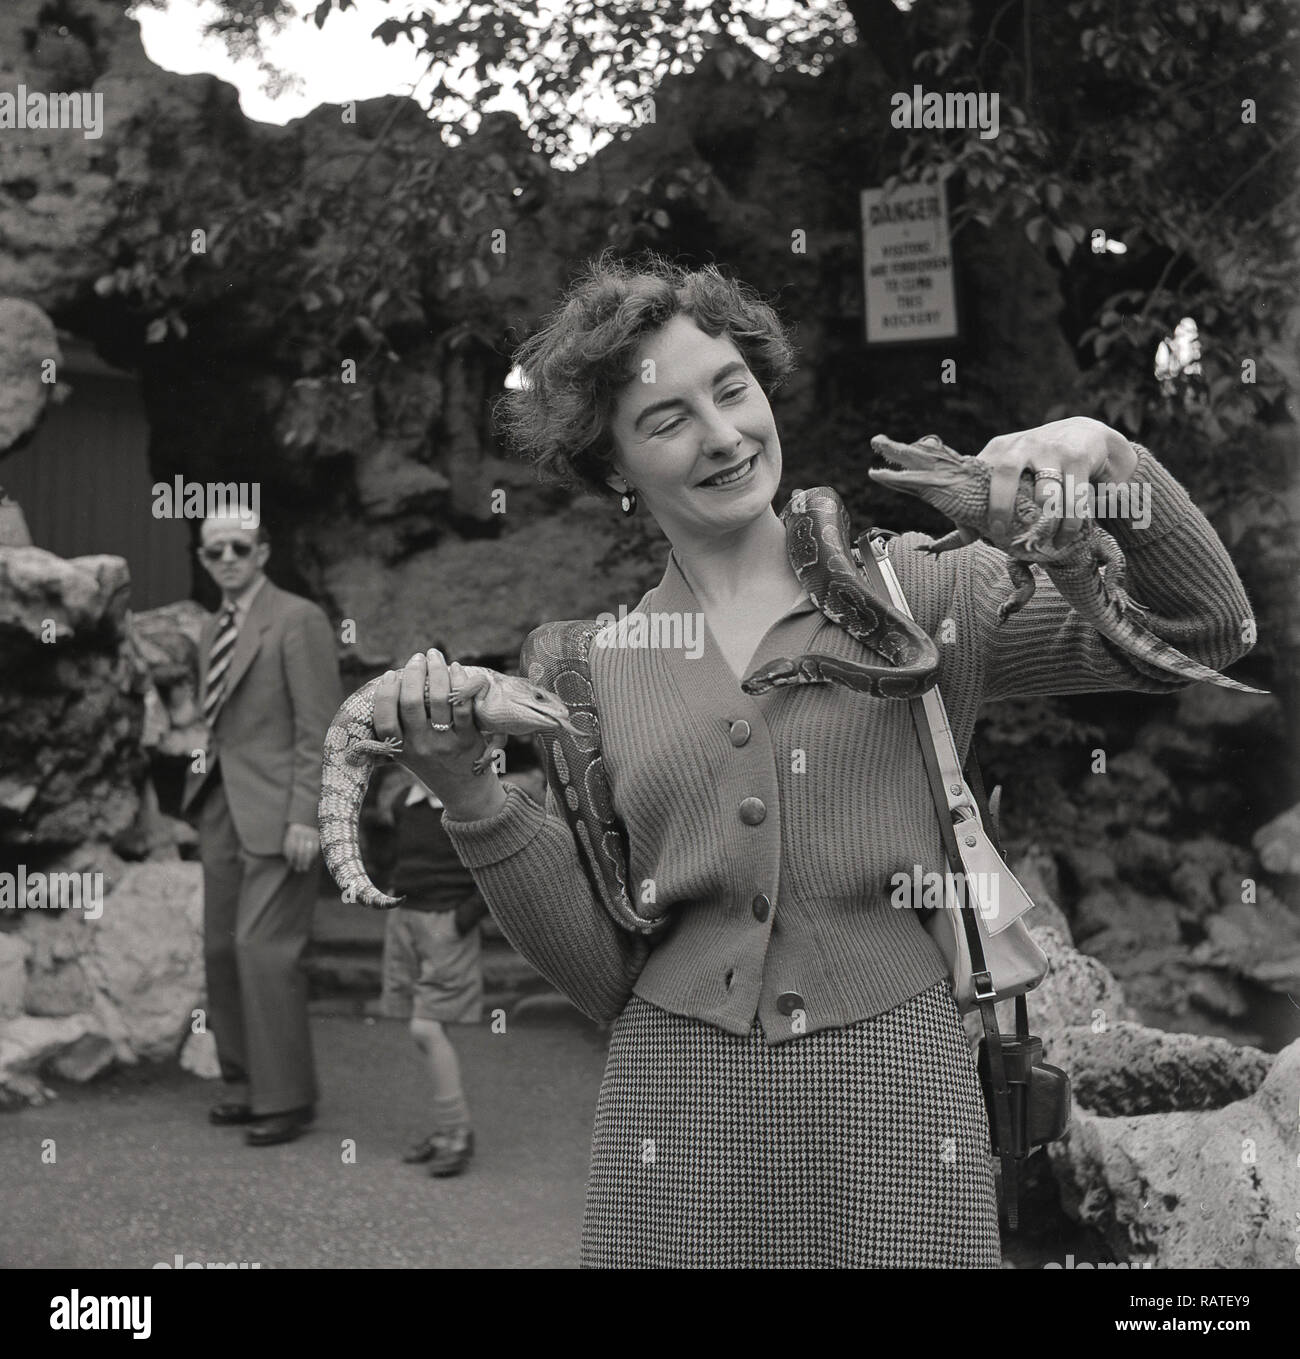 Degli anni Cinquanta, elegante -e coraggioso - lady allo zoo con un serpente sulla sua spalla e trattenere due piccoli rettili nelle sue mani, baby coccodrilli (neonati) Inghilterra, Regno Unito. Foto Stock